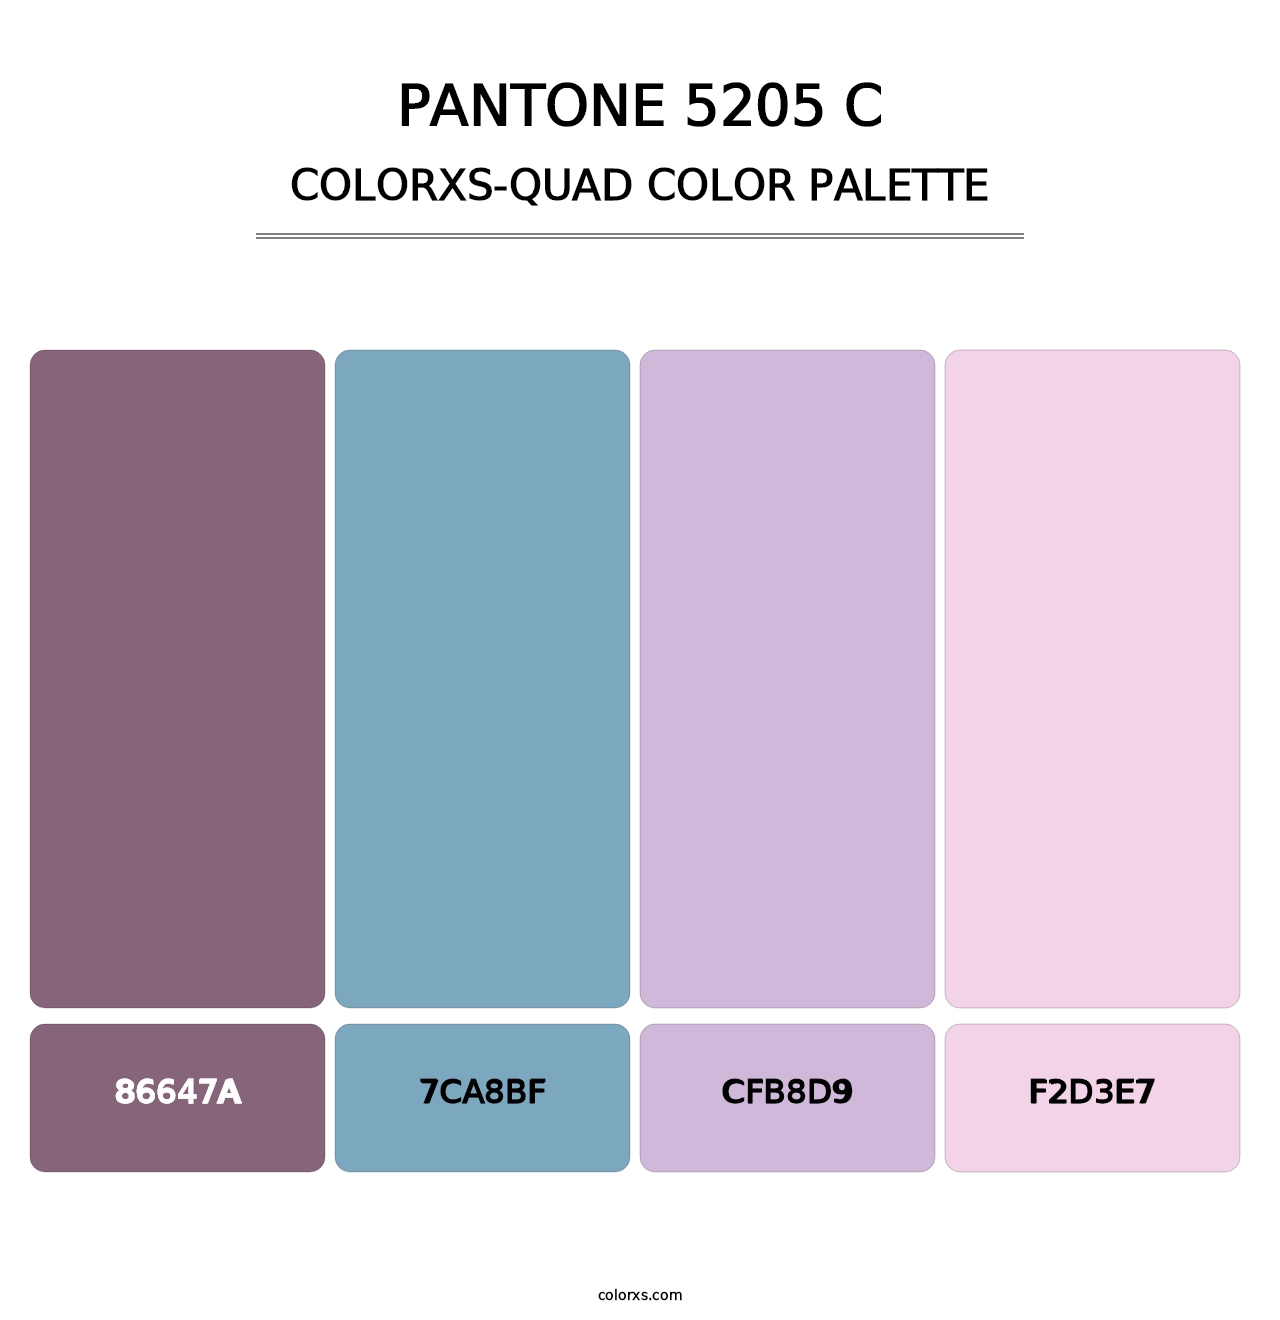 PANTONE 5205 C - Colorxs Quad Palette